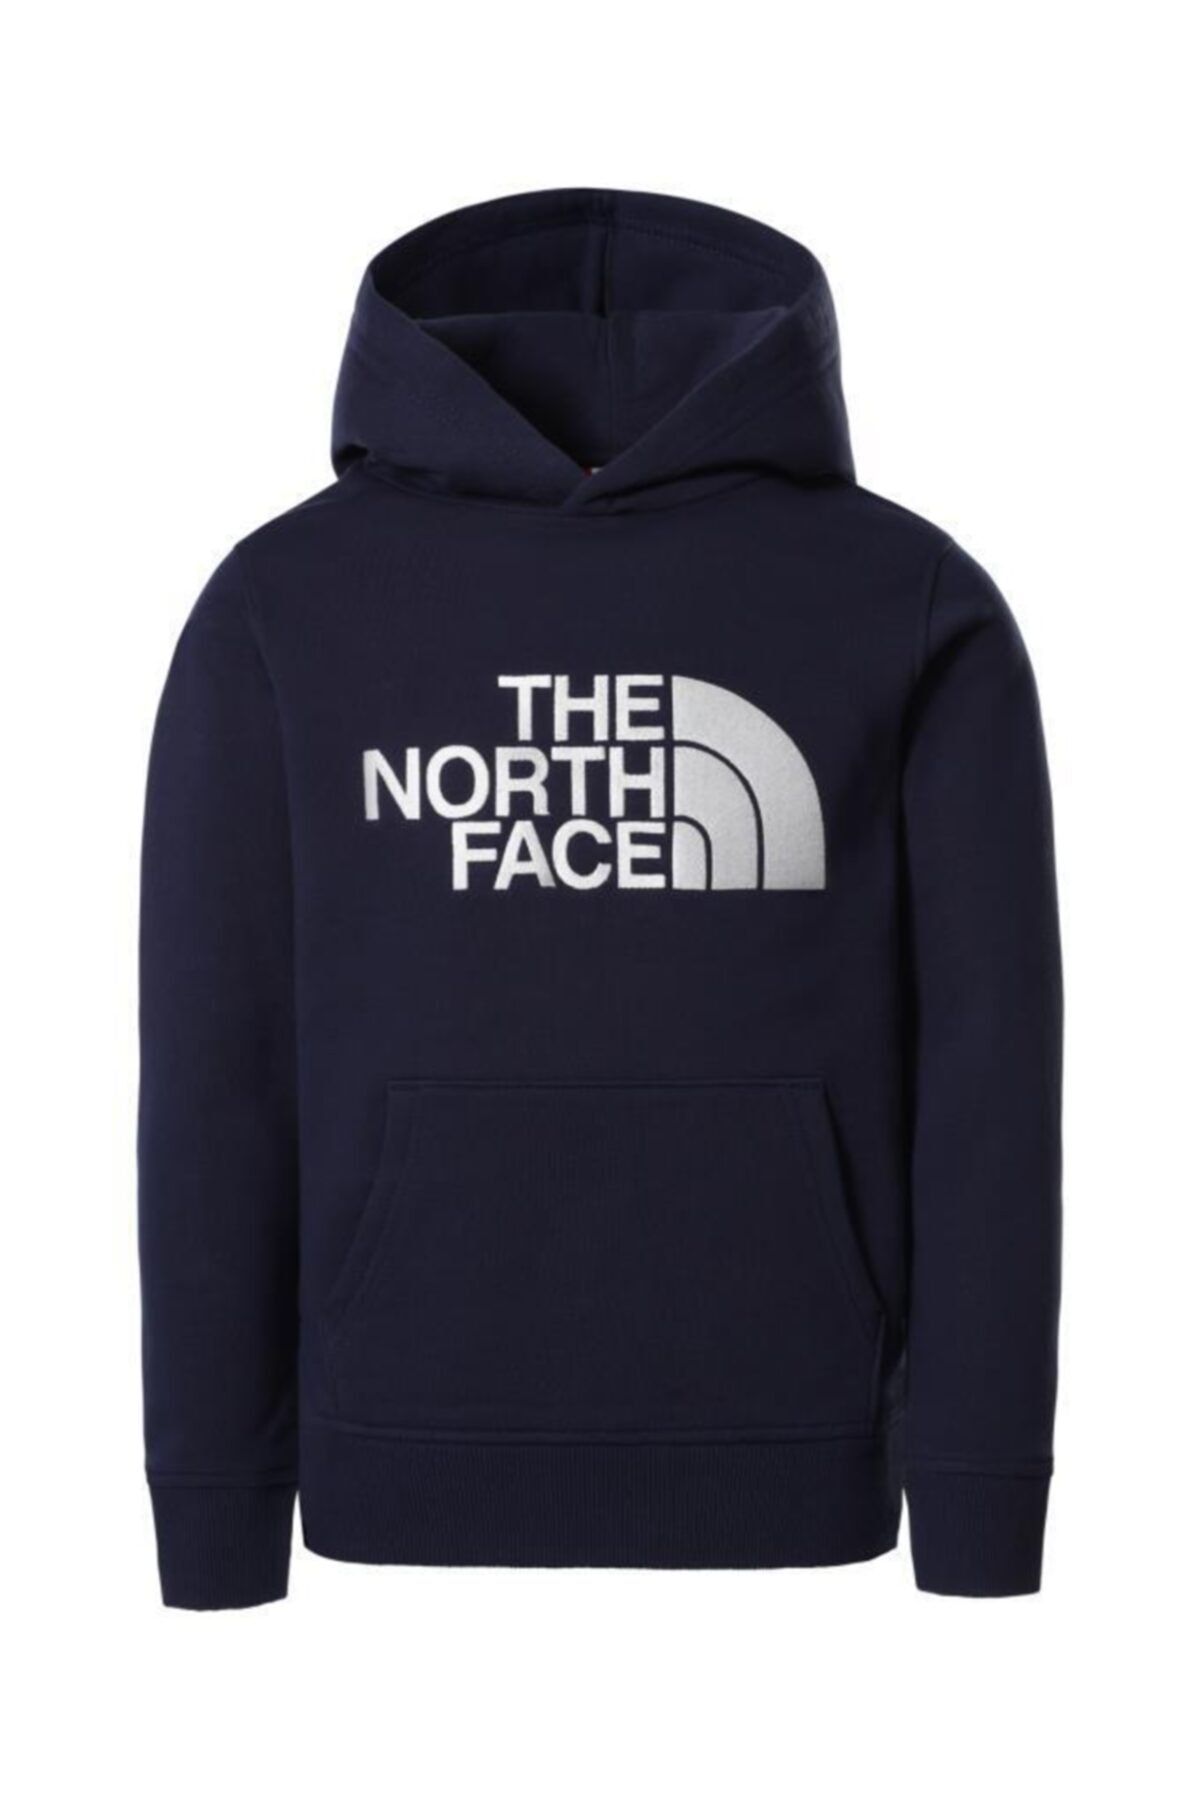 The North Face Drew Peak Hoodie Kapüşonlu Çocuk Sweatshirt Lacivert